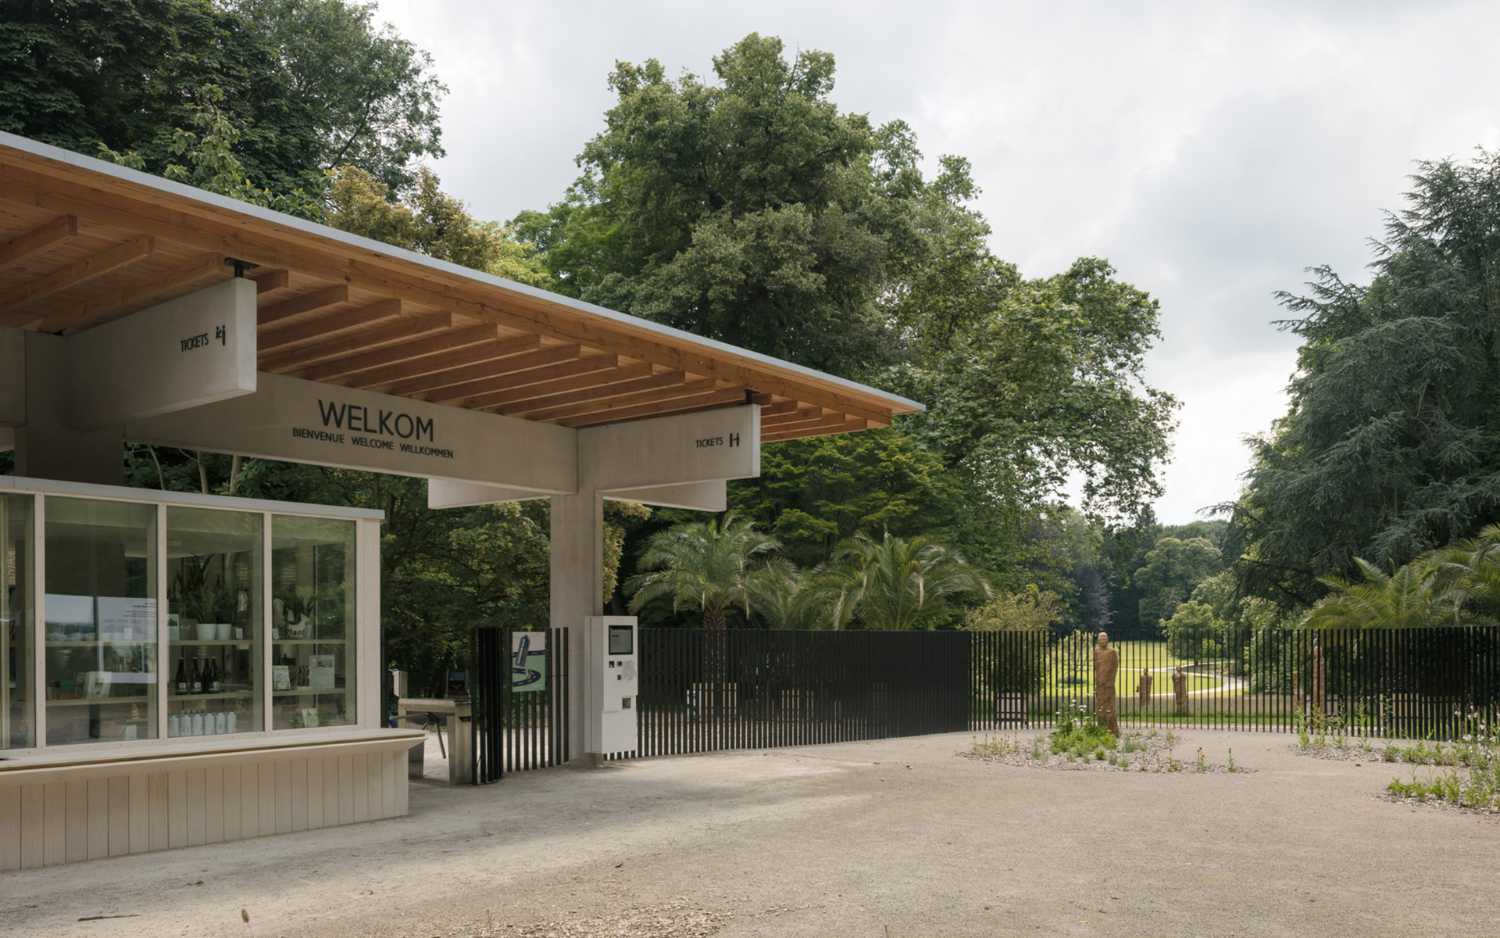 Nuevas zonas de recepción en el Jardín Botánico de Meise. Innovador concepto de recepción en armonía con el paisaje